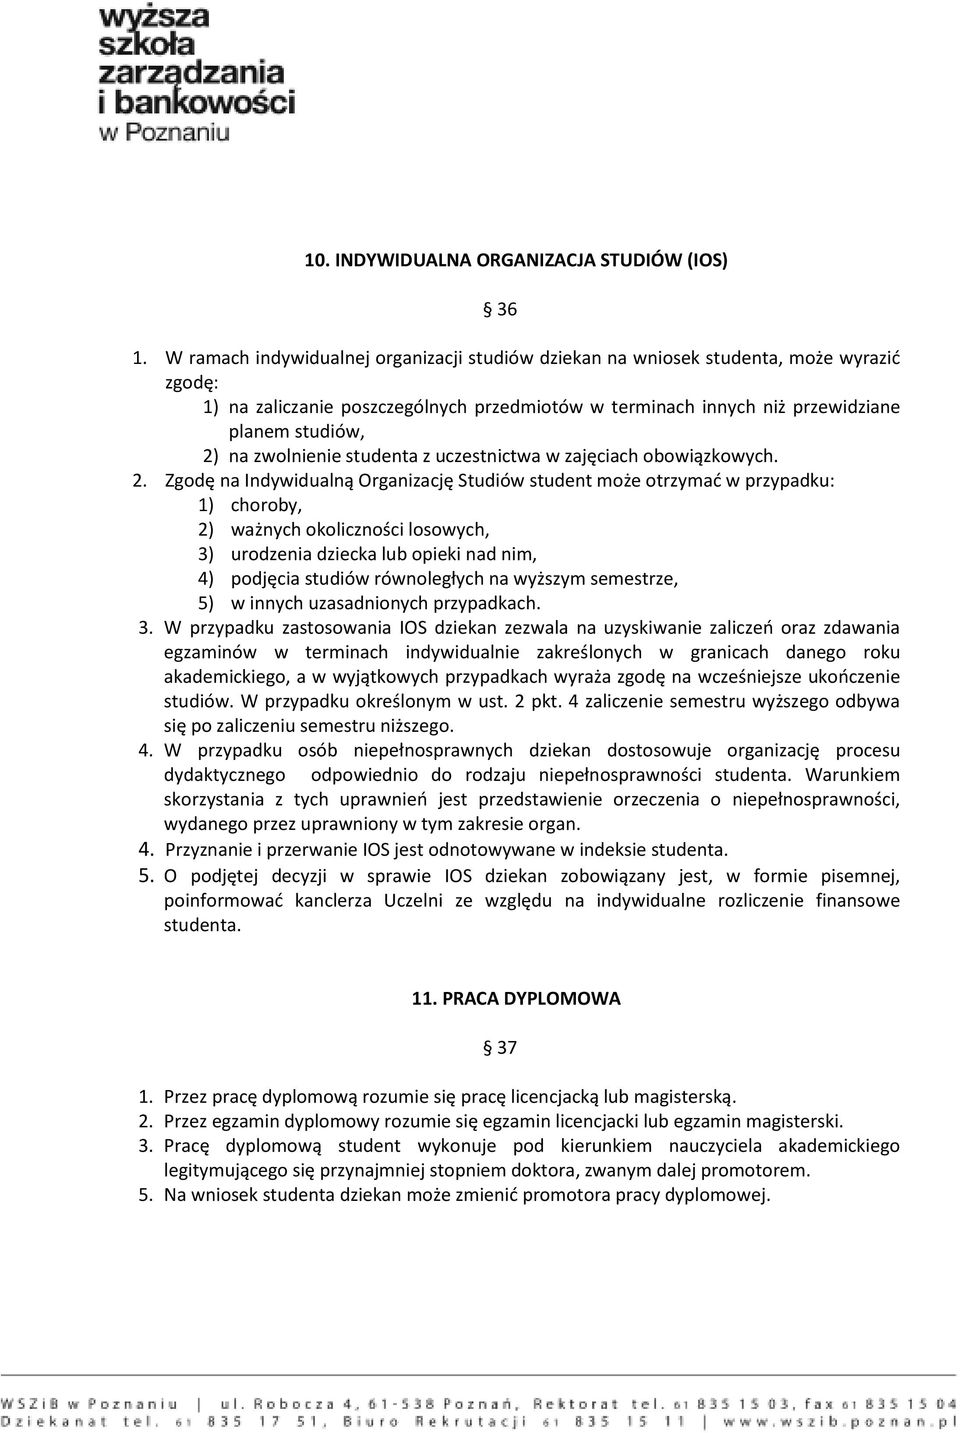 zwolnienie studenta z uczestnictwa w zajęciach obowiązkowych. 2.